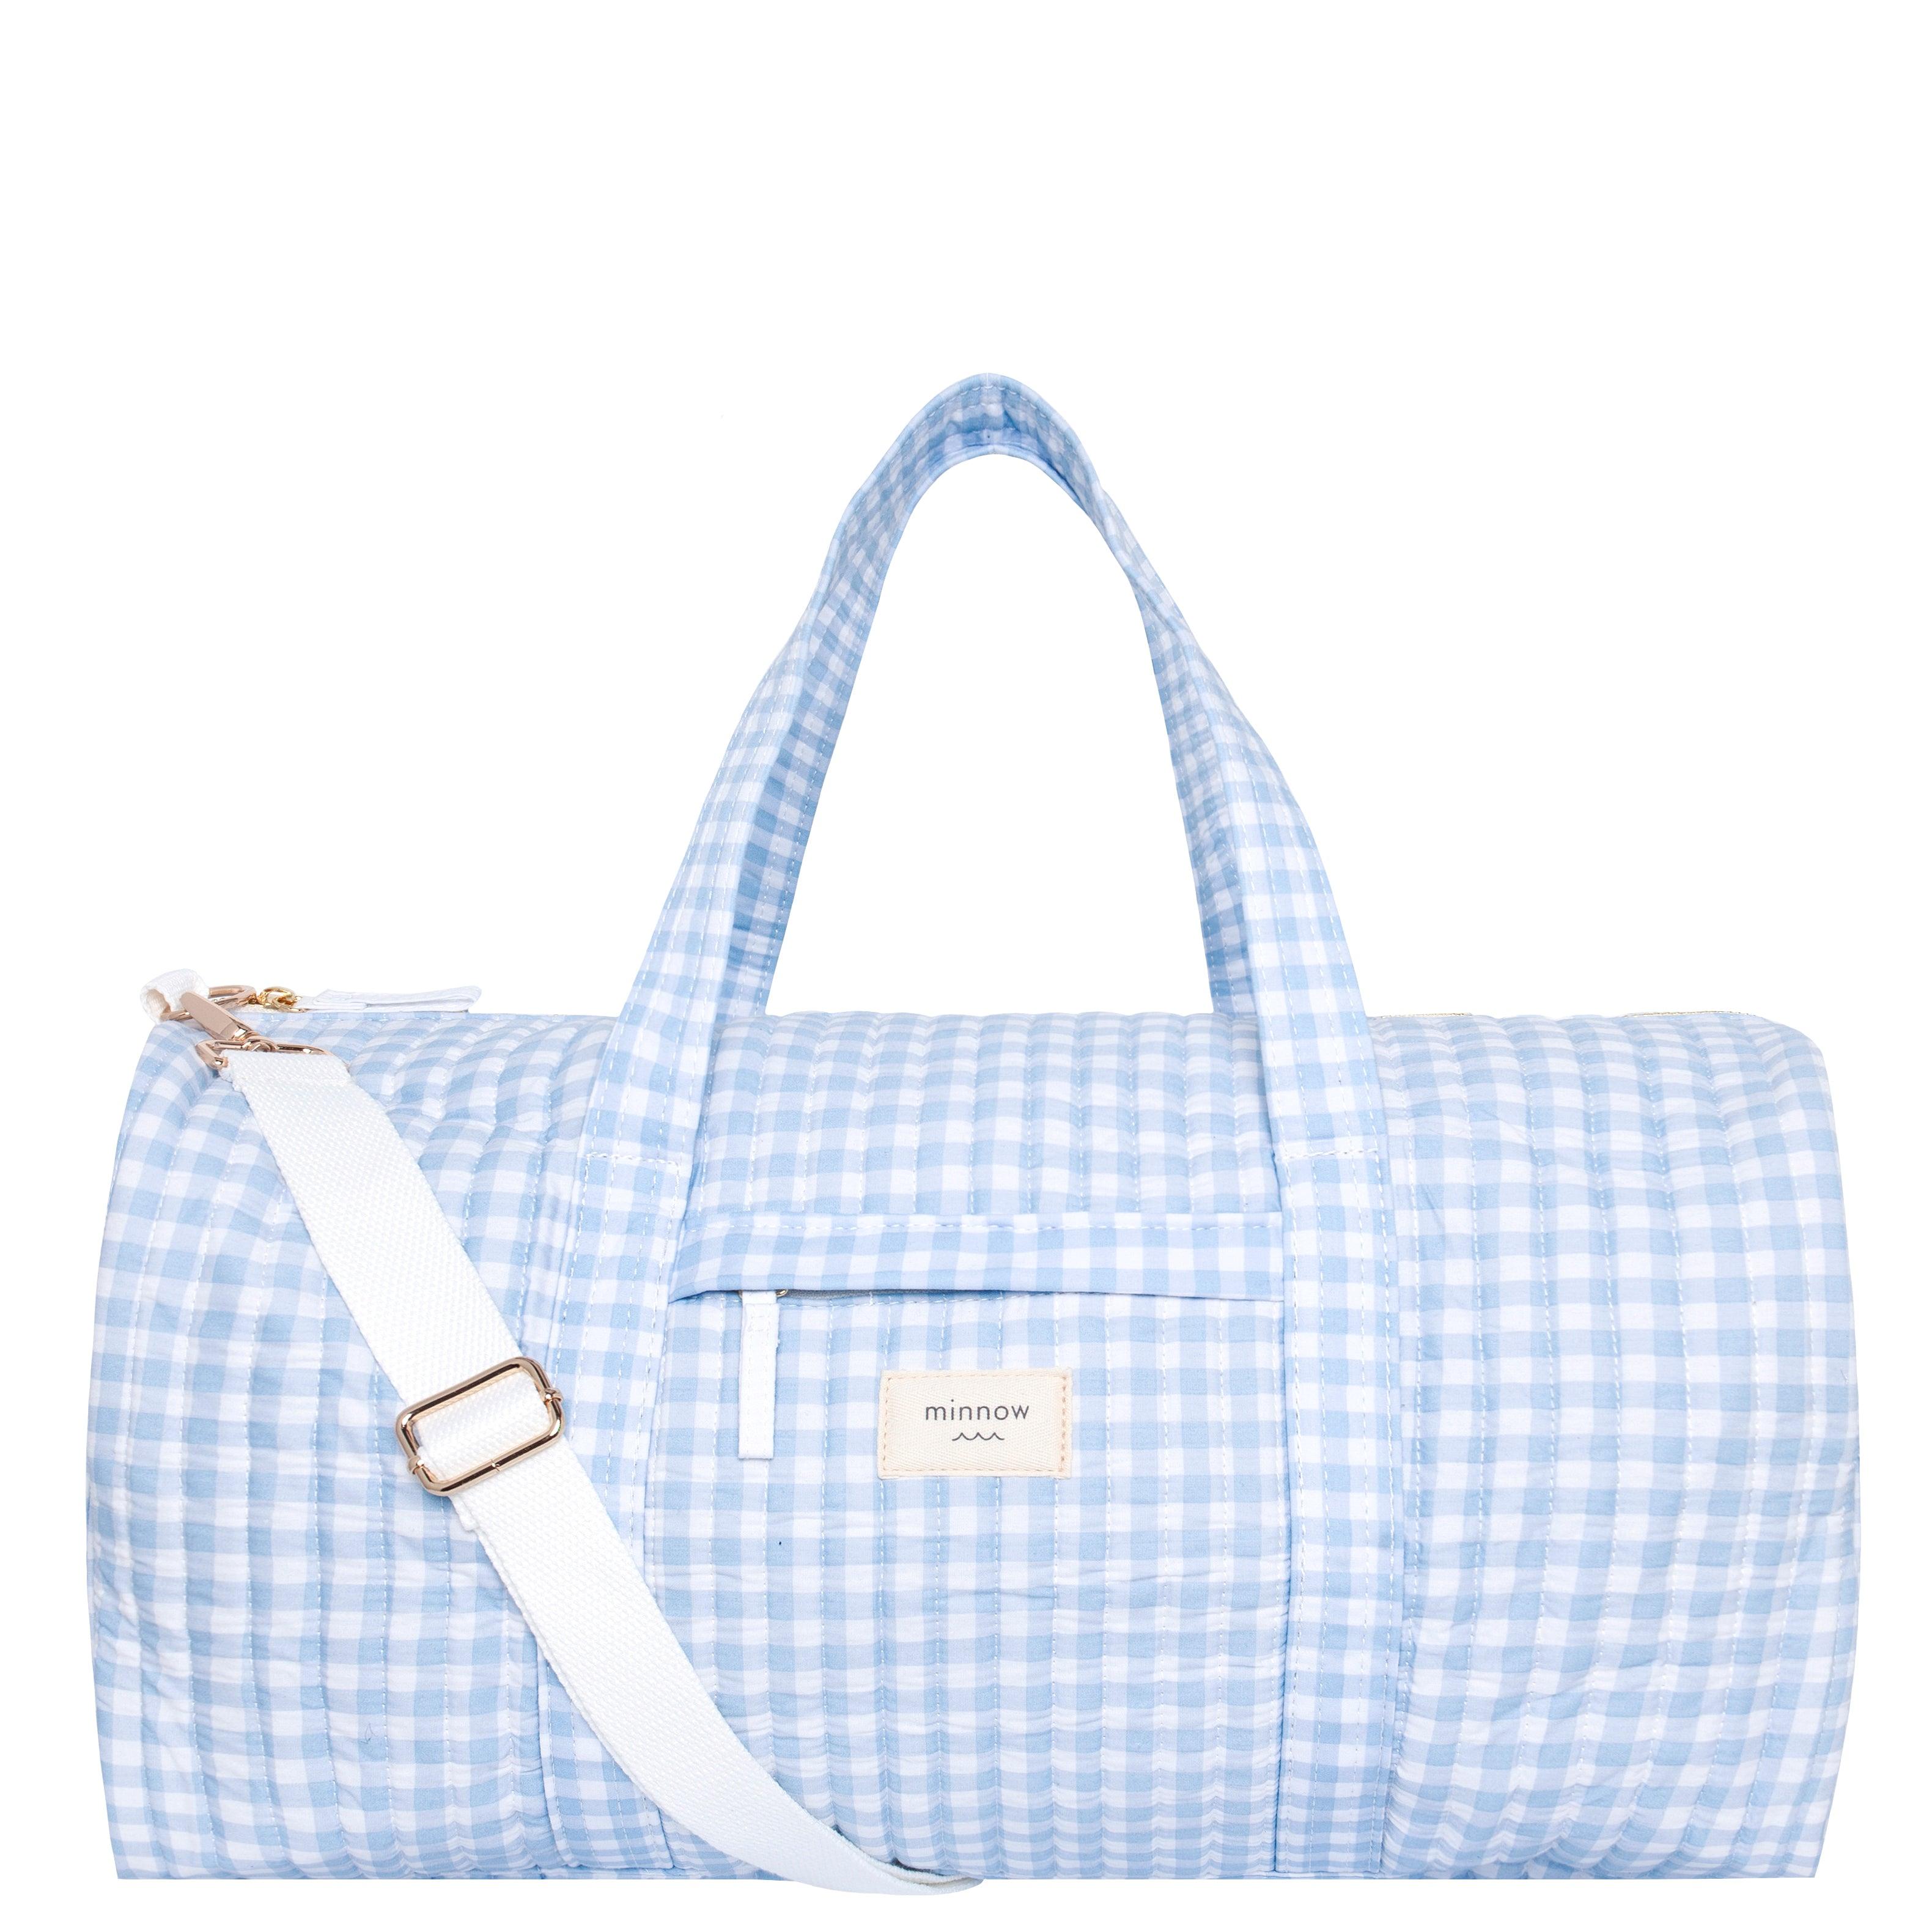 oasis blue gingham weekender bag – minnow